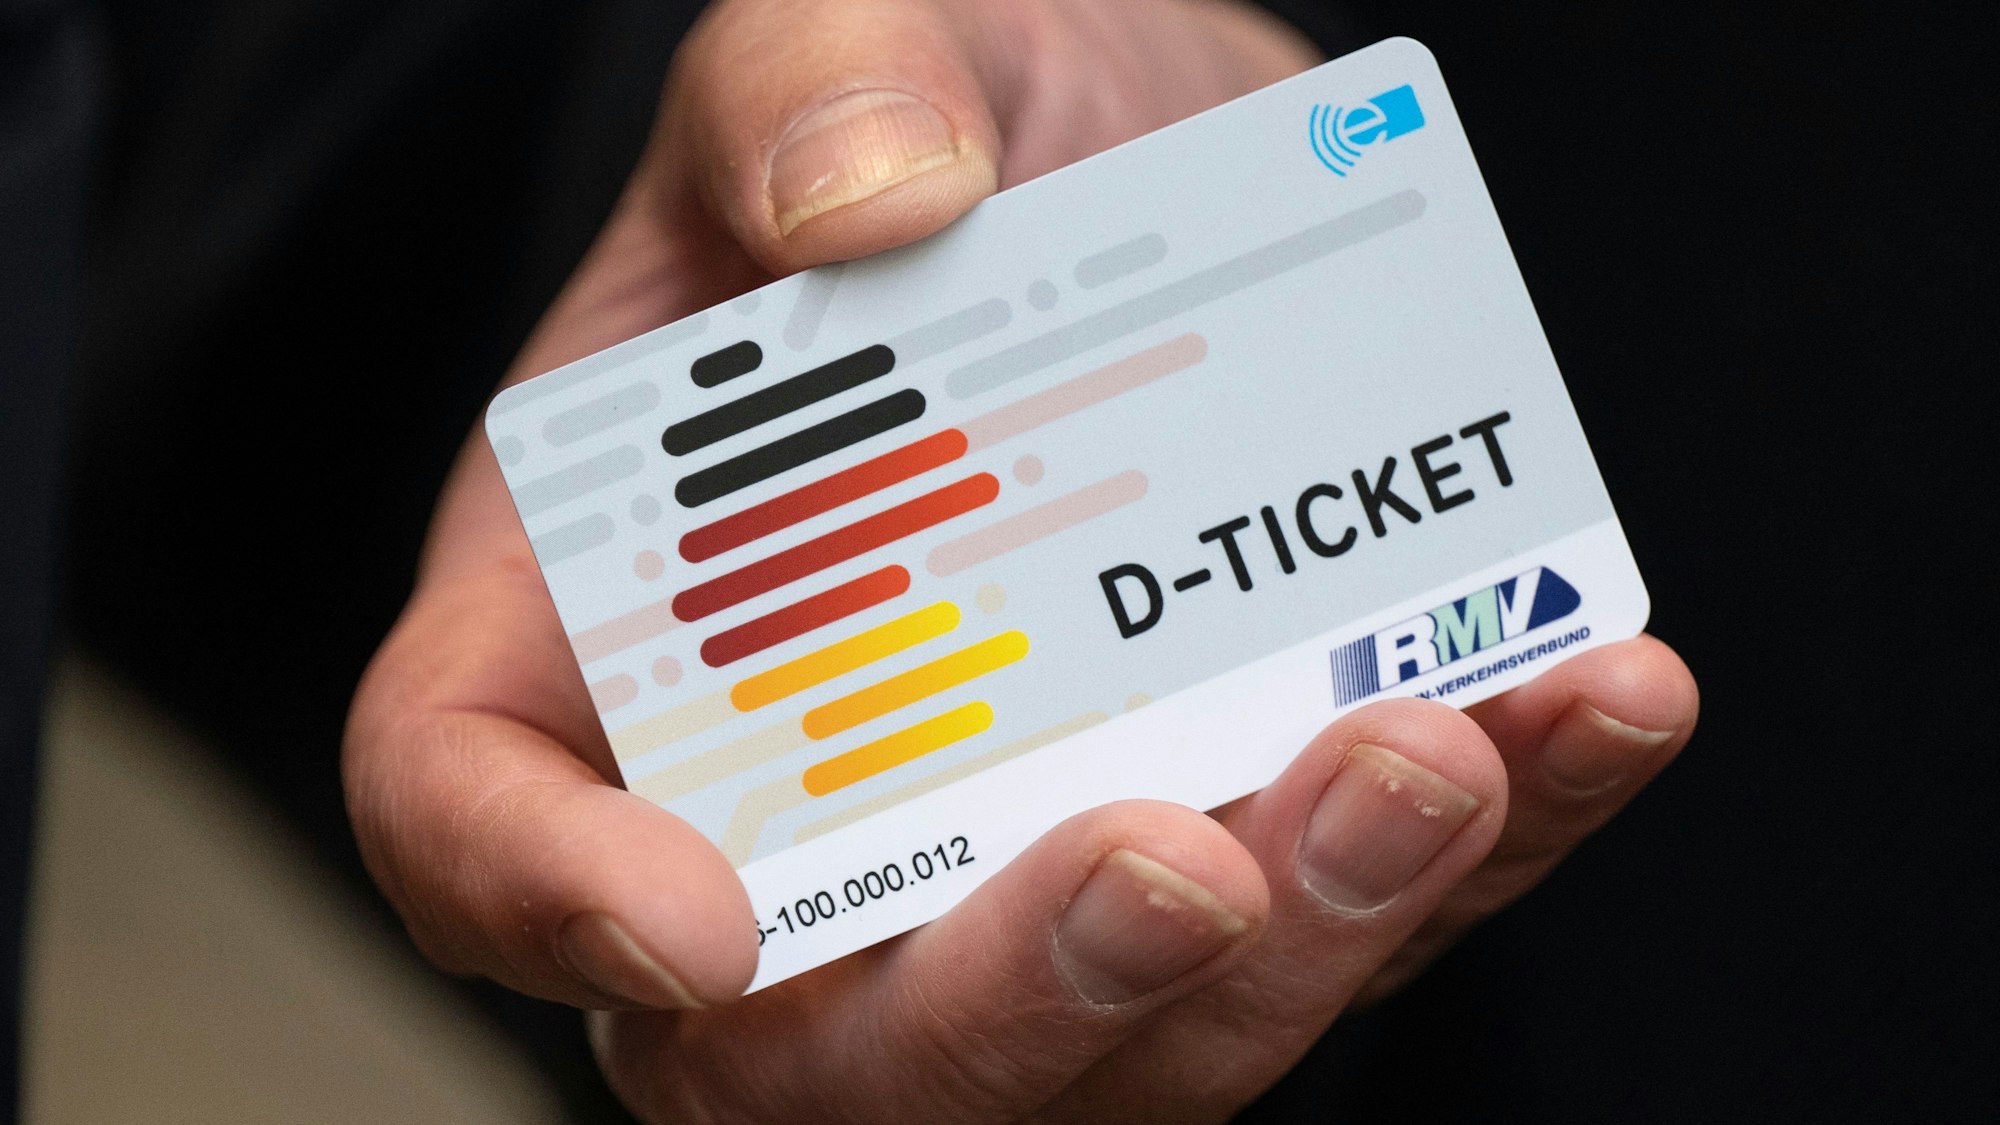 Ein «D-Ticket» im Chipkartenformat wird in den Händen gehalten